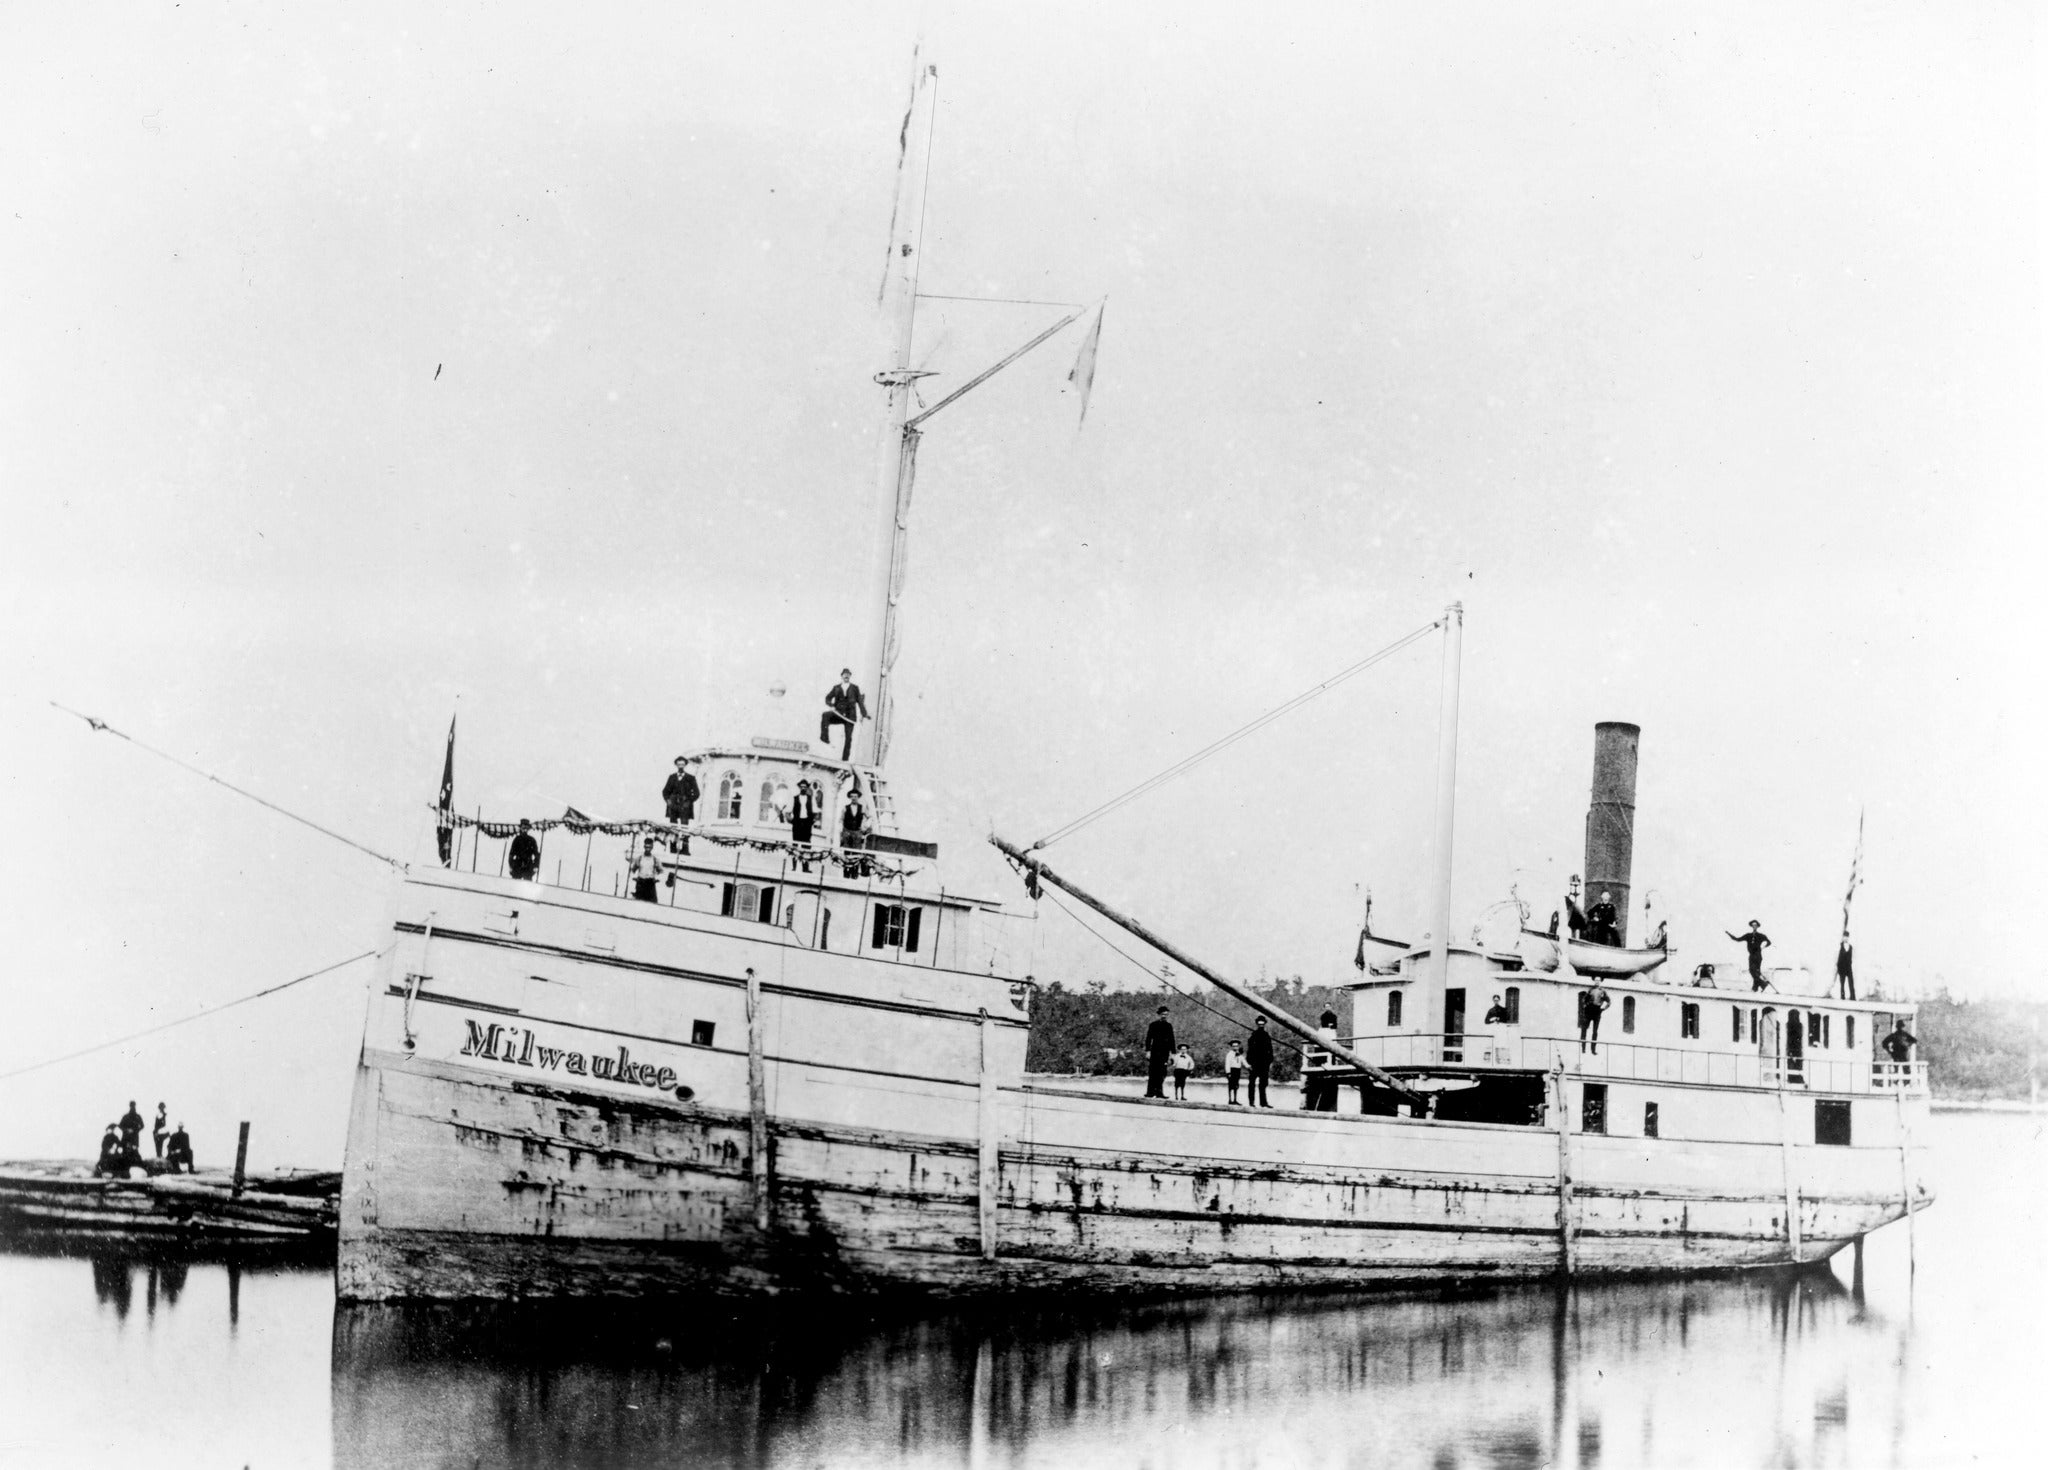 <p>The <em>Milwaukee </em>steamship</p>